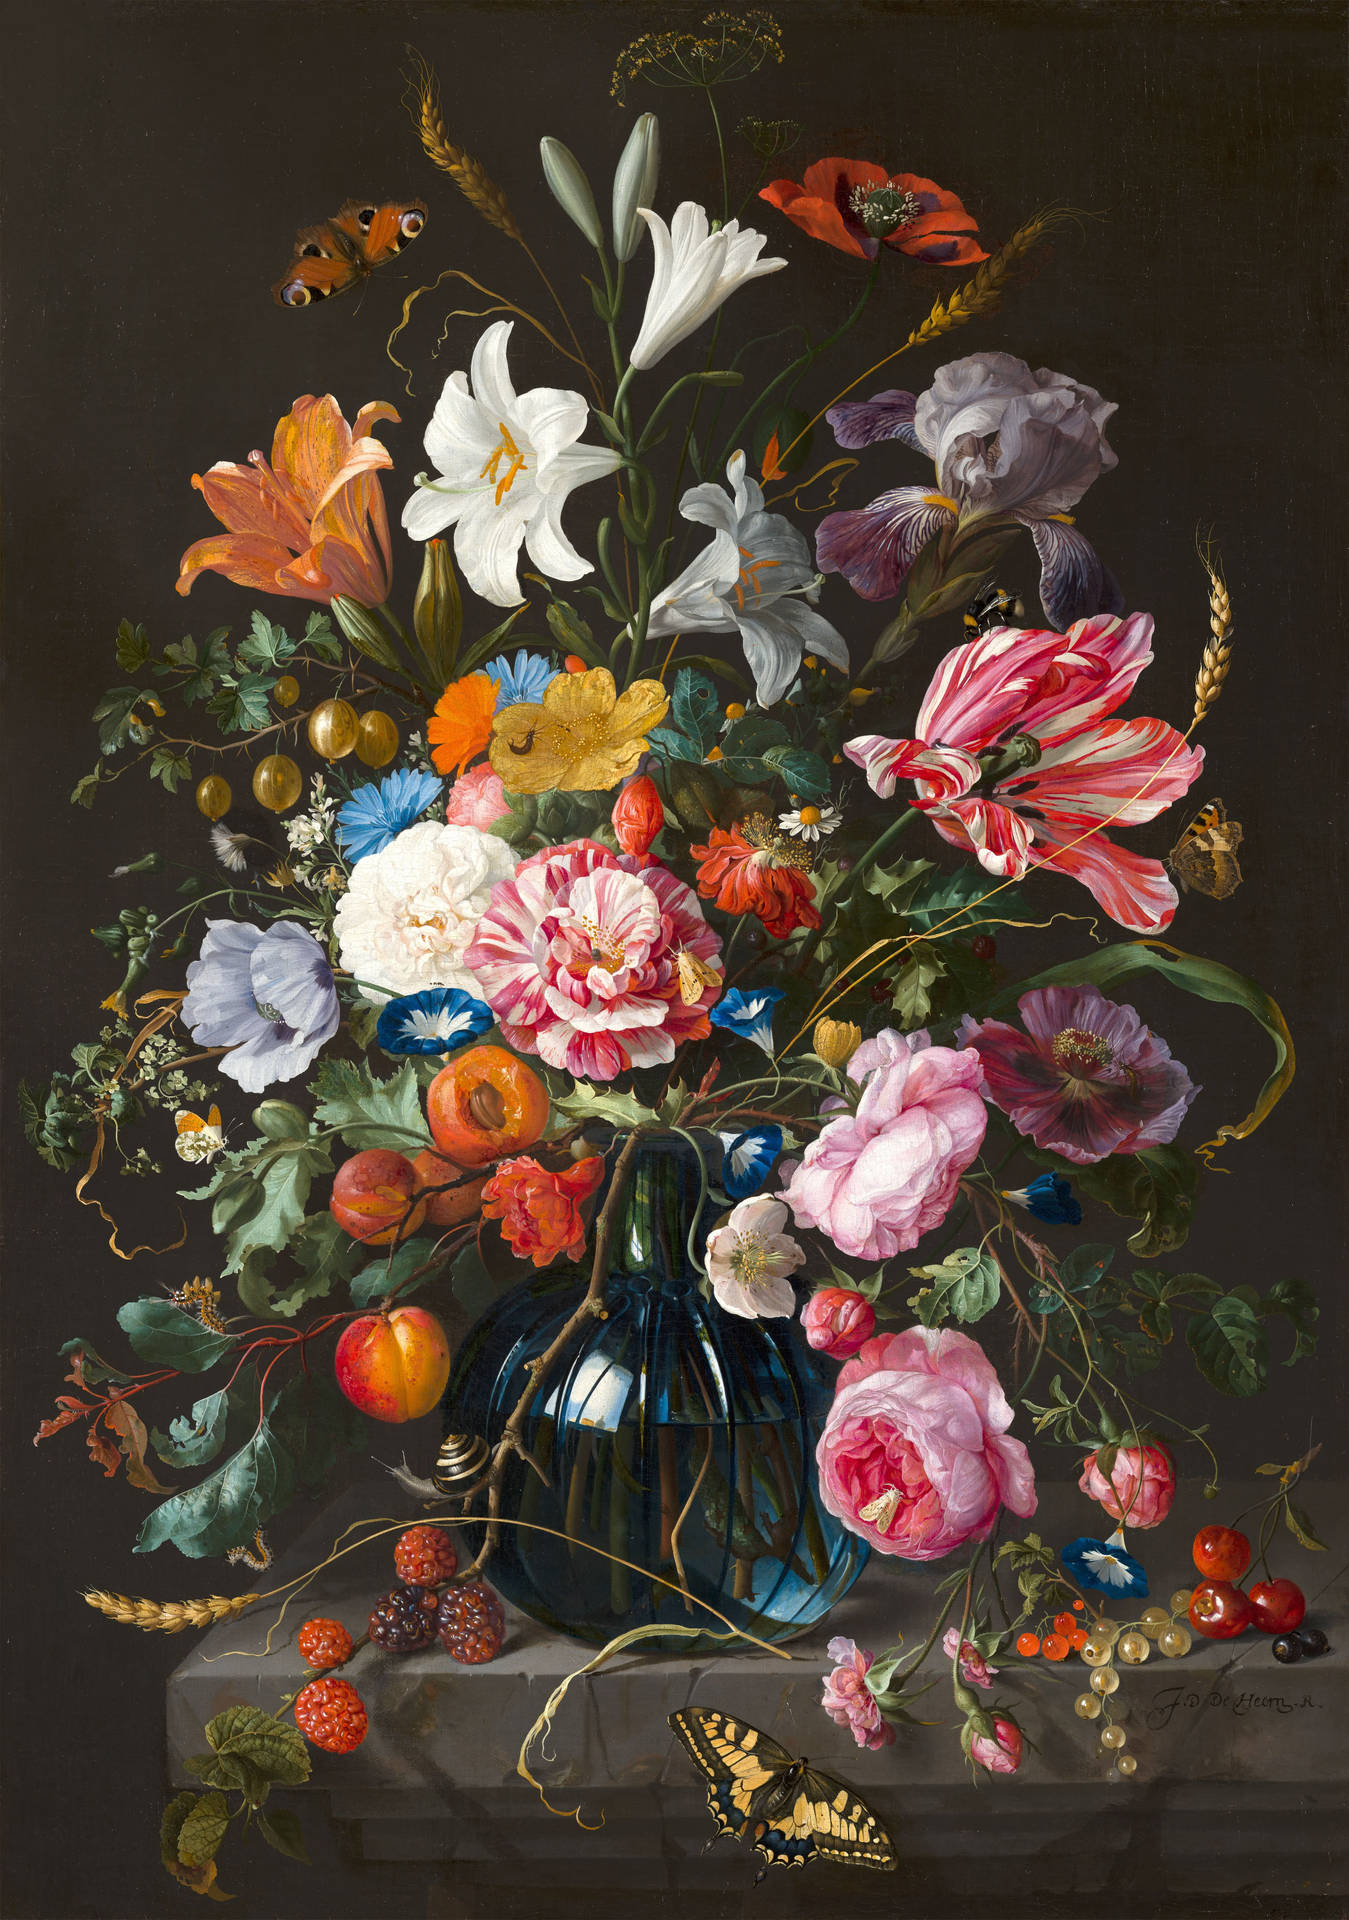 Gemäldeeines Blumenstraußes In Einer Vase Von De Heem Wallpaper